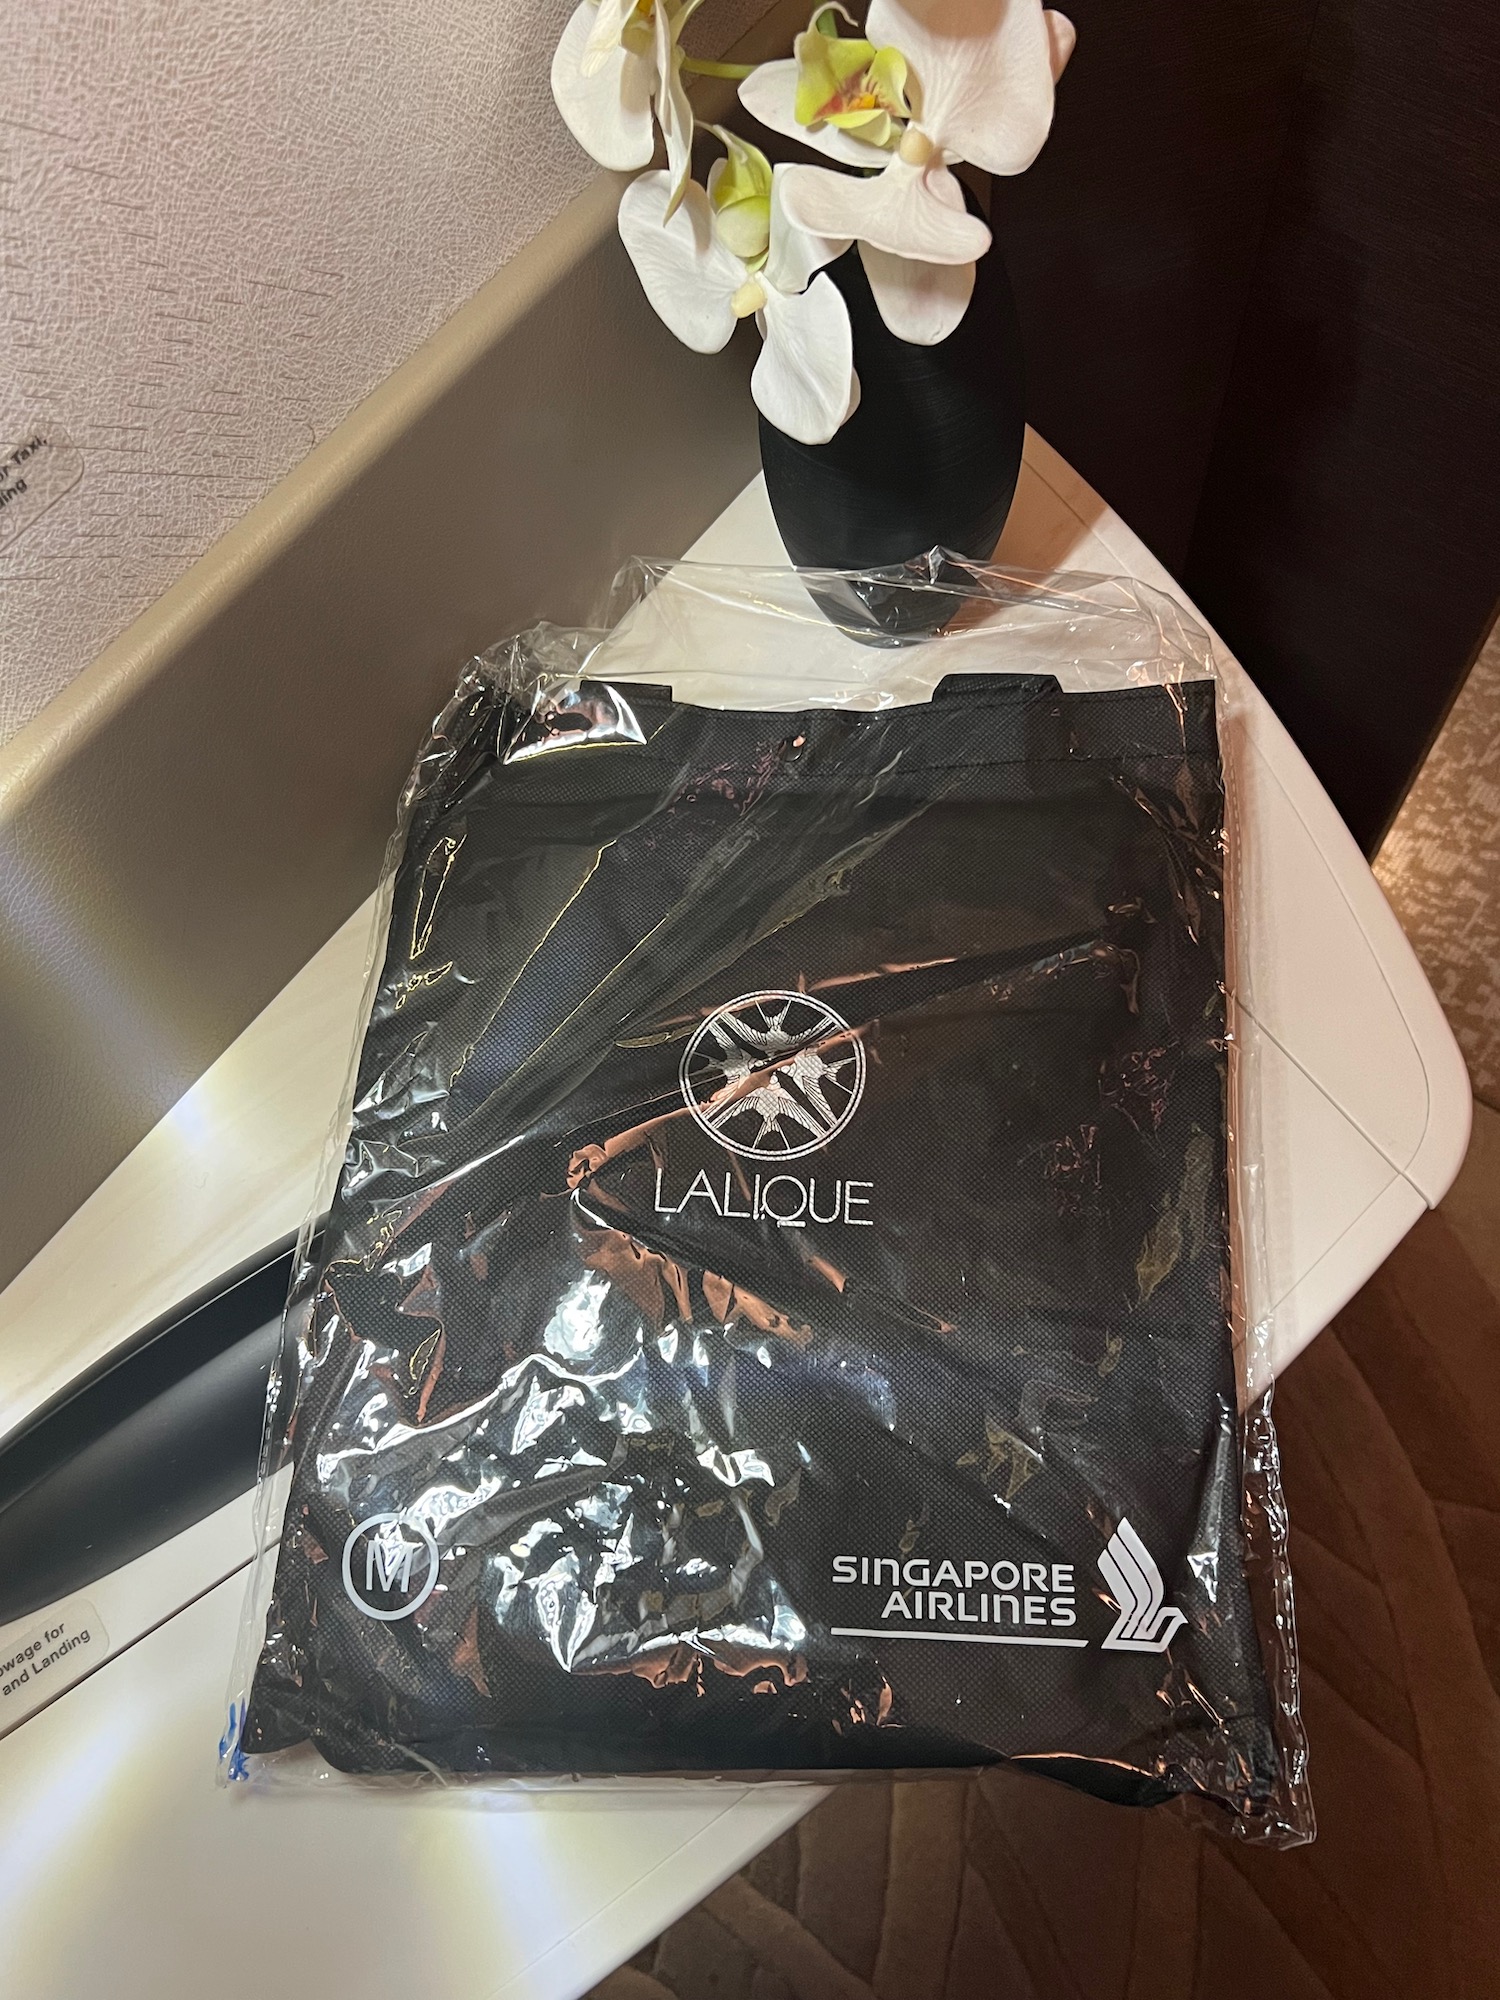 a black bag on a table